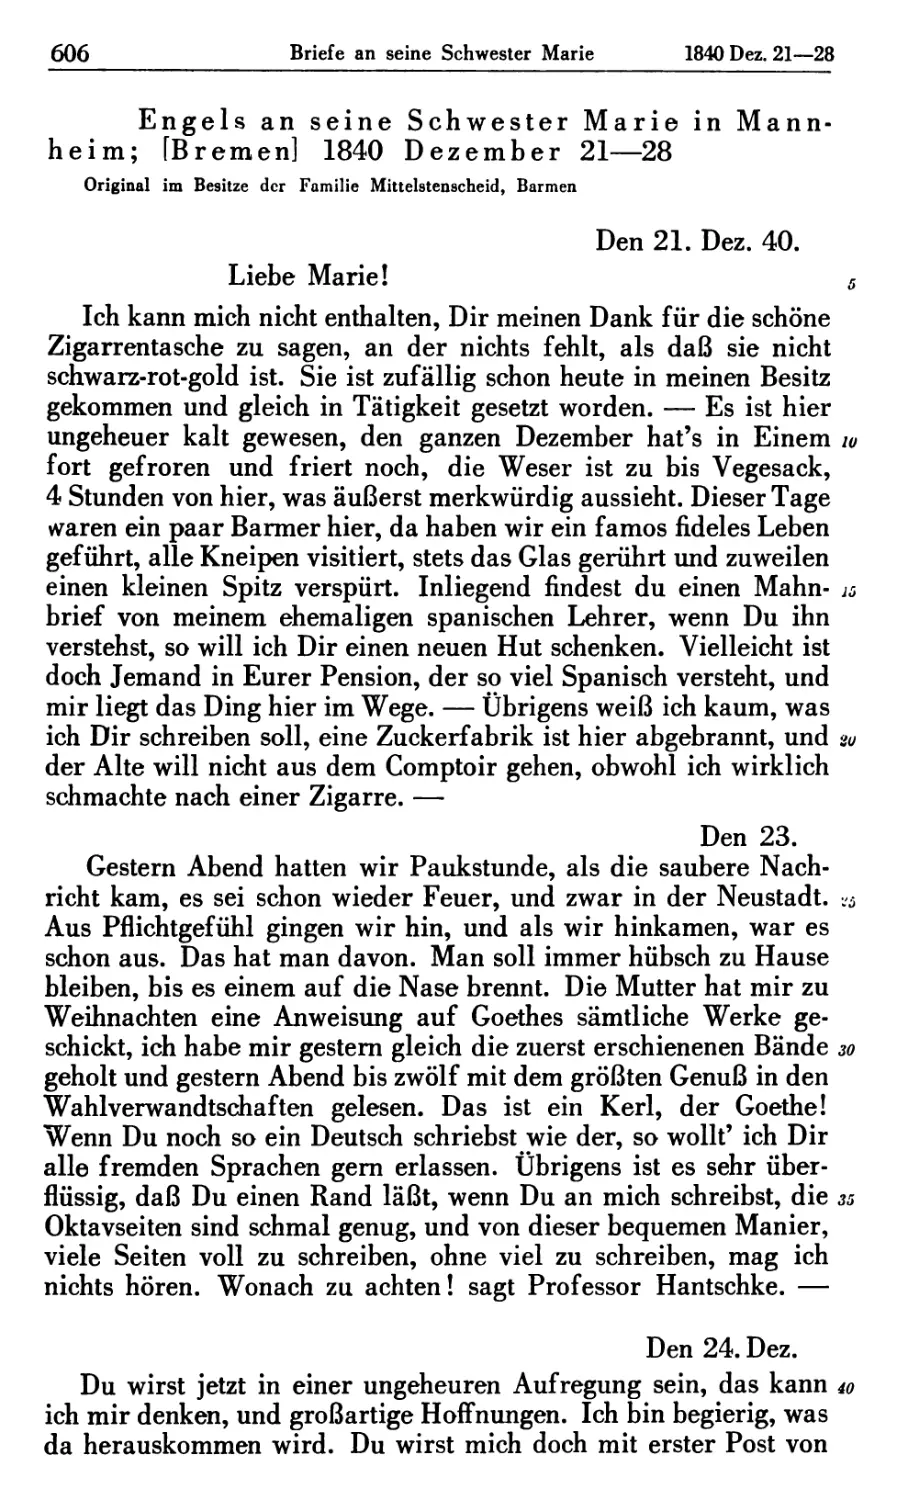 Engels an seine Schwester Marie in Mannheim; [Bremen] 1840 Dezember 21—28